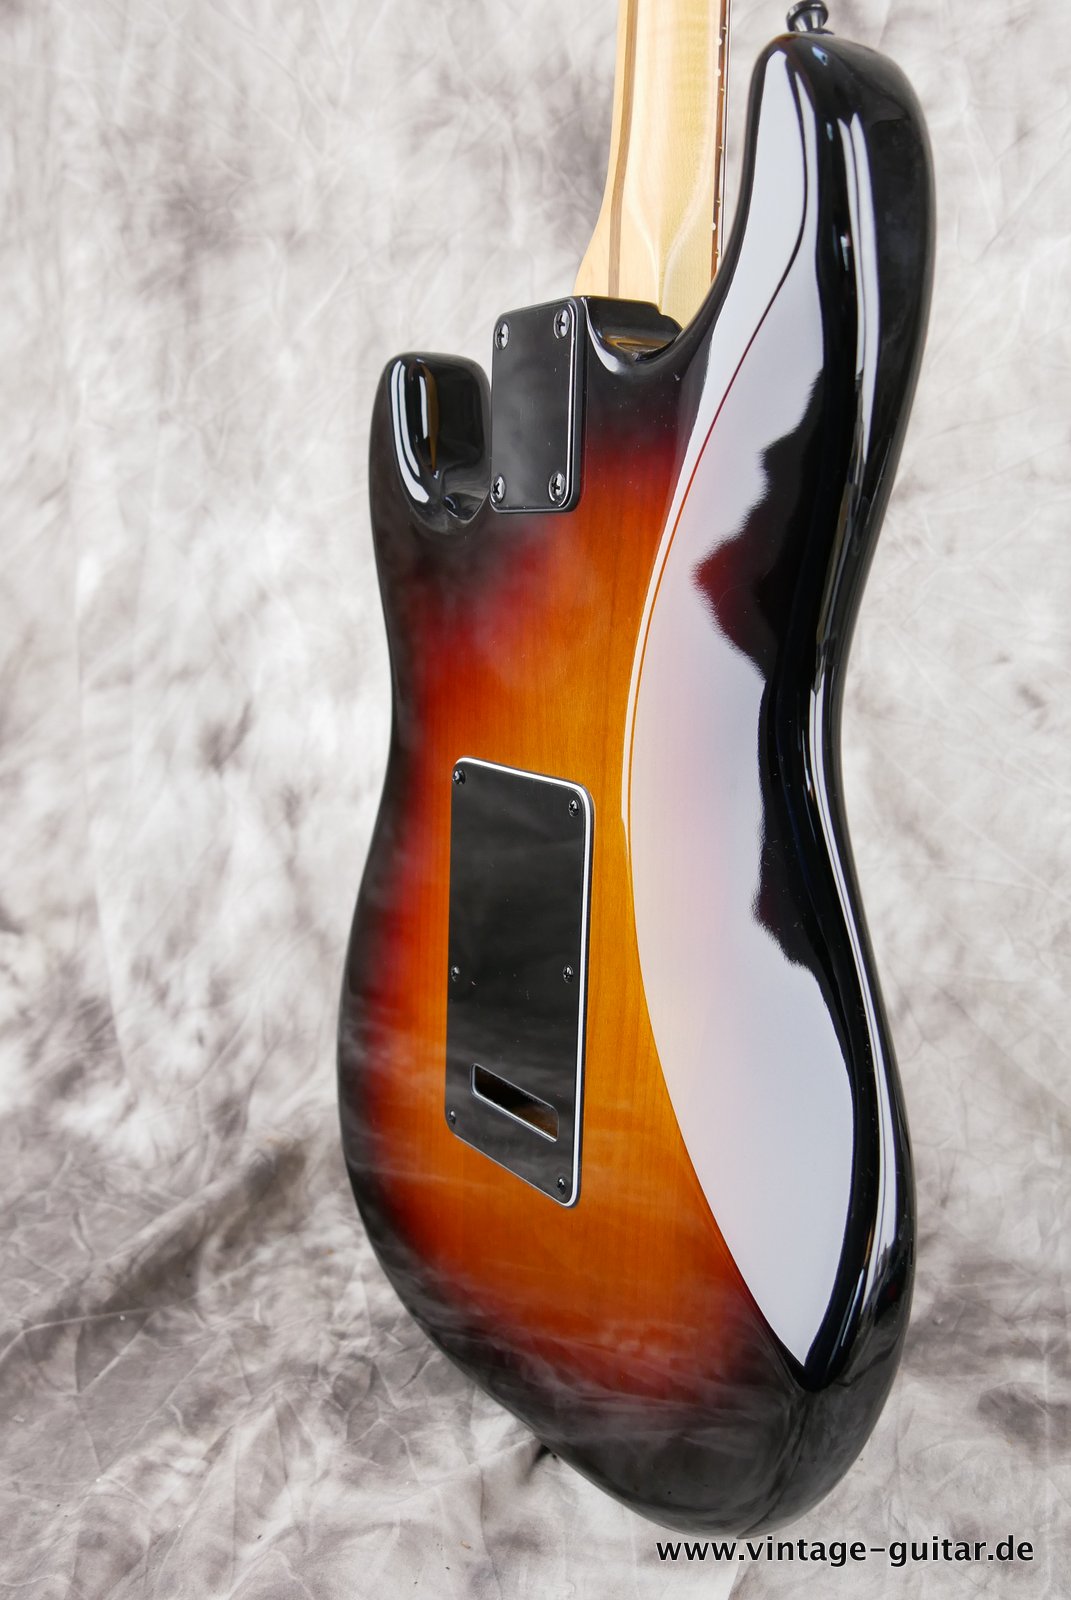 Fender-Stratocaster-2014-US-Standard-black-hardware-007.JPG